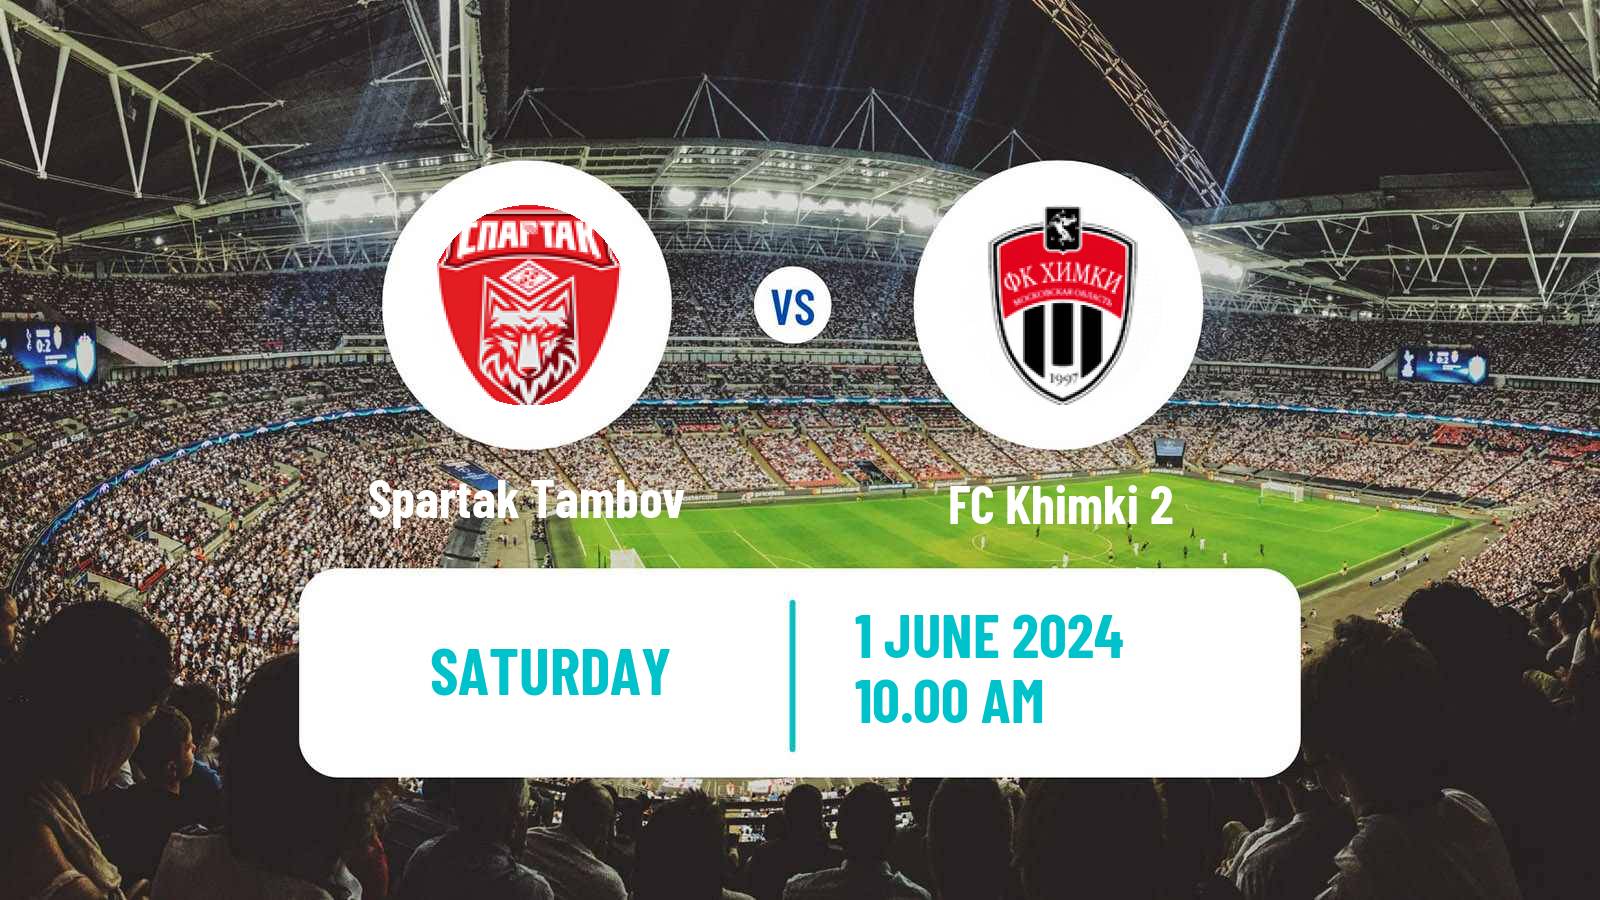 Soccer FNL 2 Division B Group 3 Spartak Tambov - Khimki 2